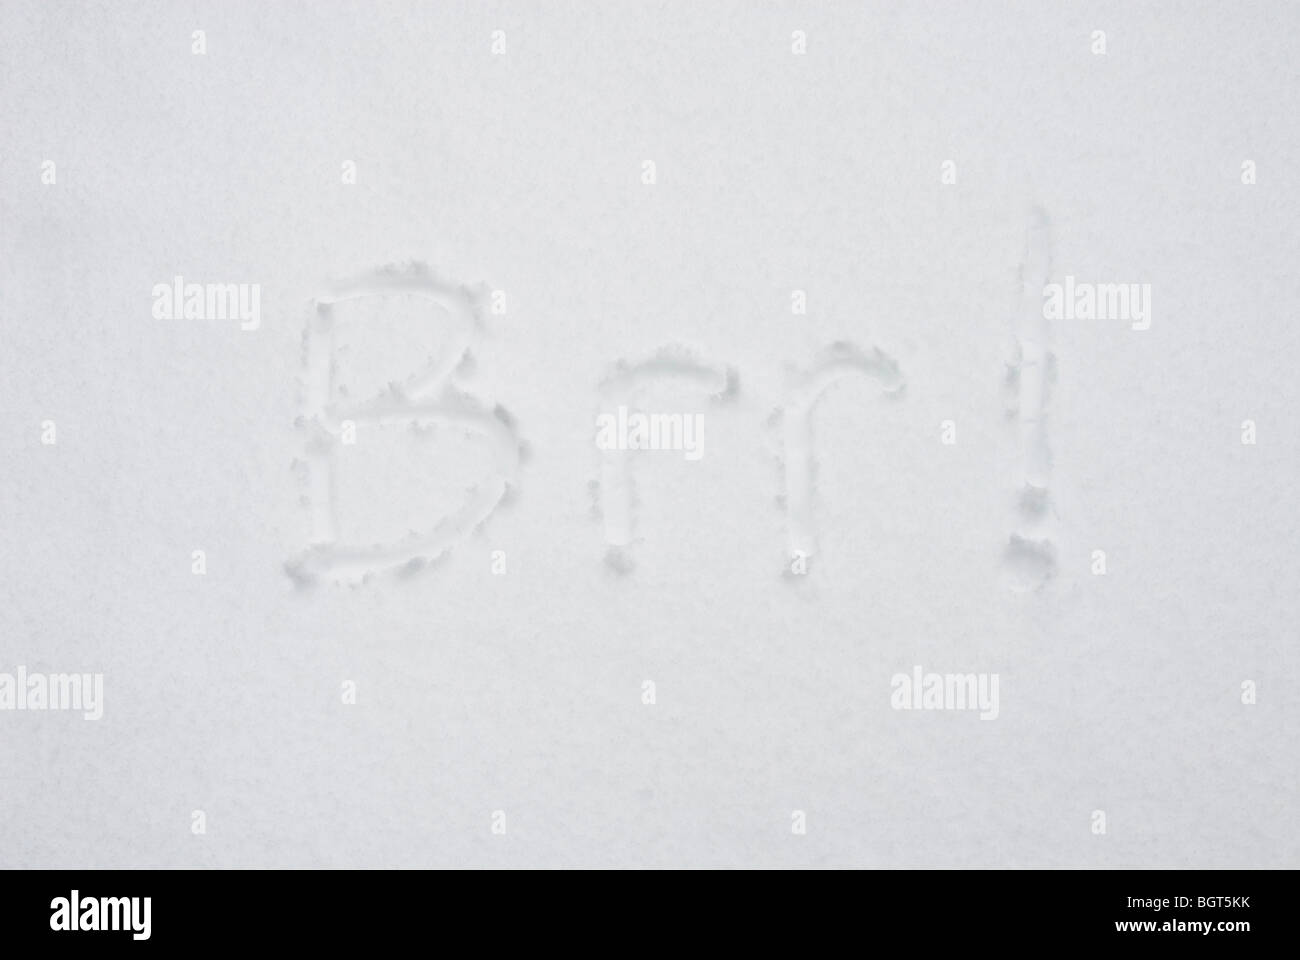 Das Wort "Brr! geschrieben im Schnee Stockfoto